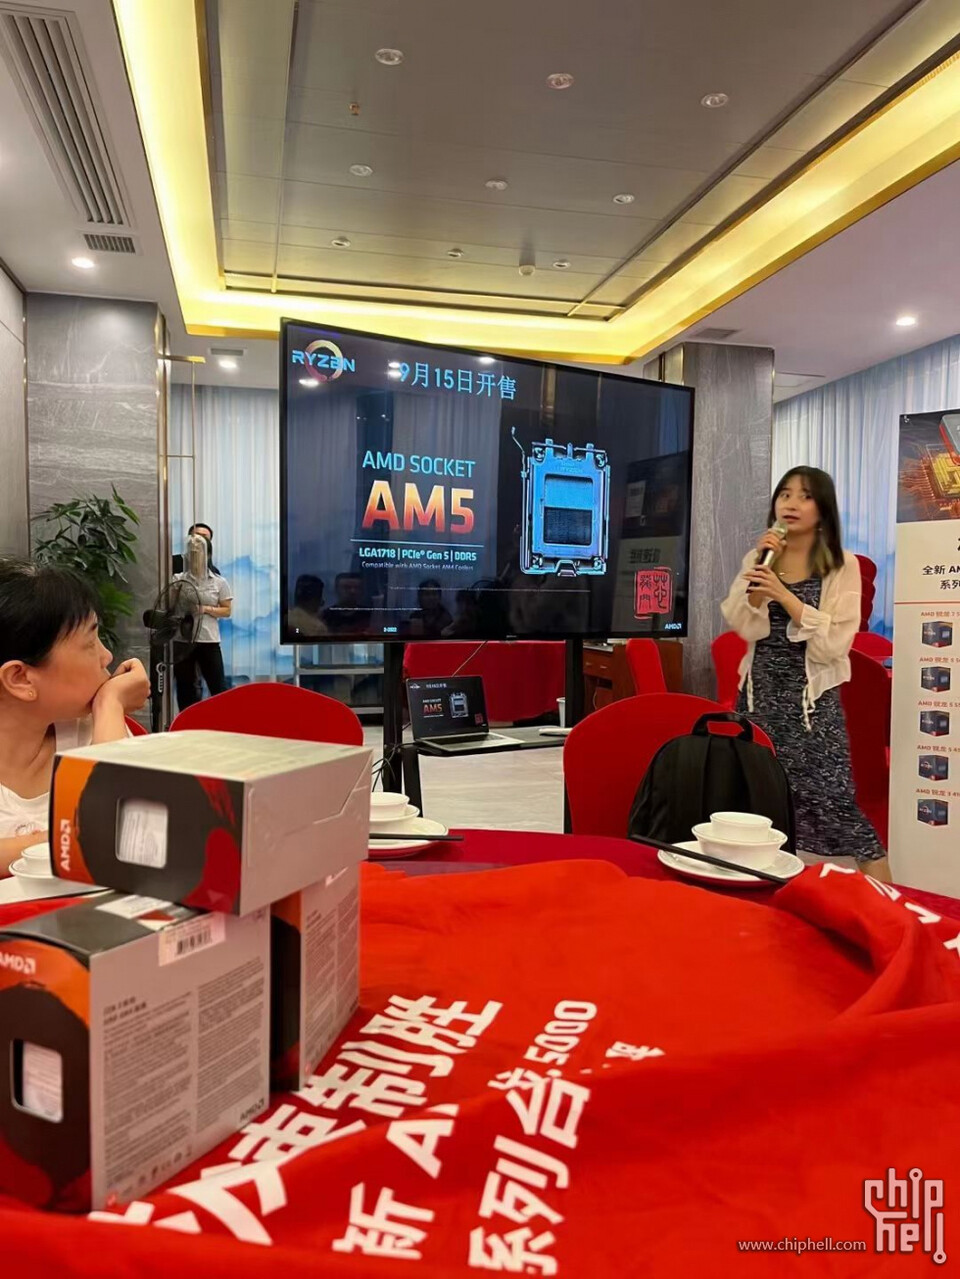 중국의 한 프레젠테이션에서 공개된 AM5 소켓 제품의 판매 날짜가 9월 15일로 명시돼 있다.(자료: chiphell)